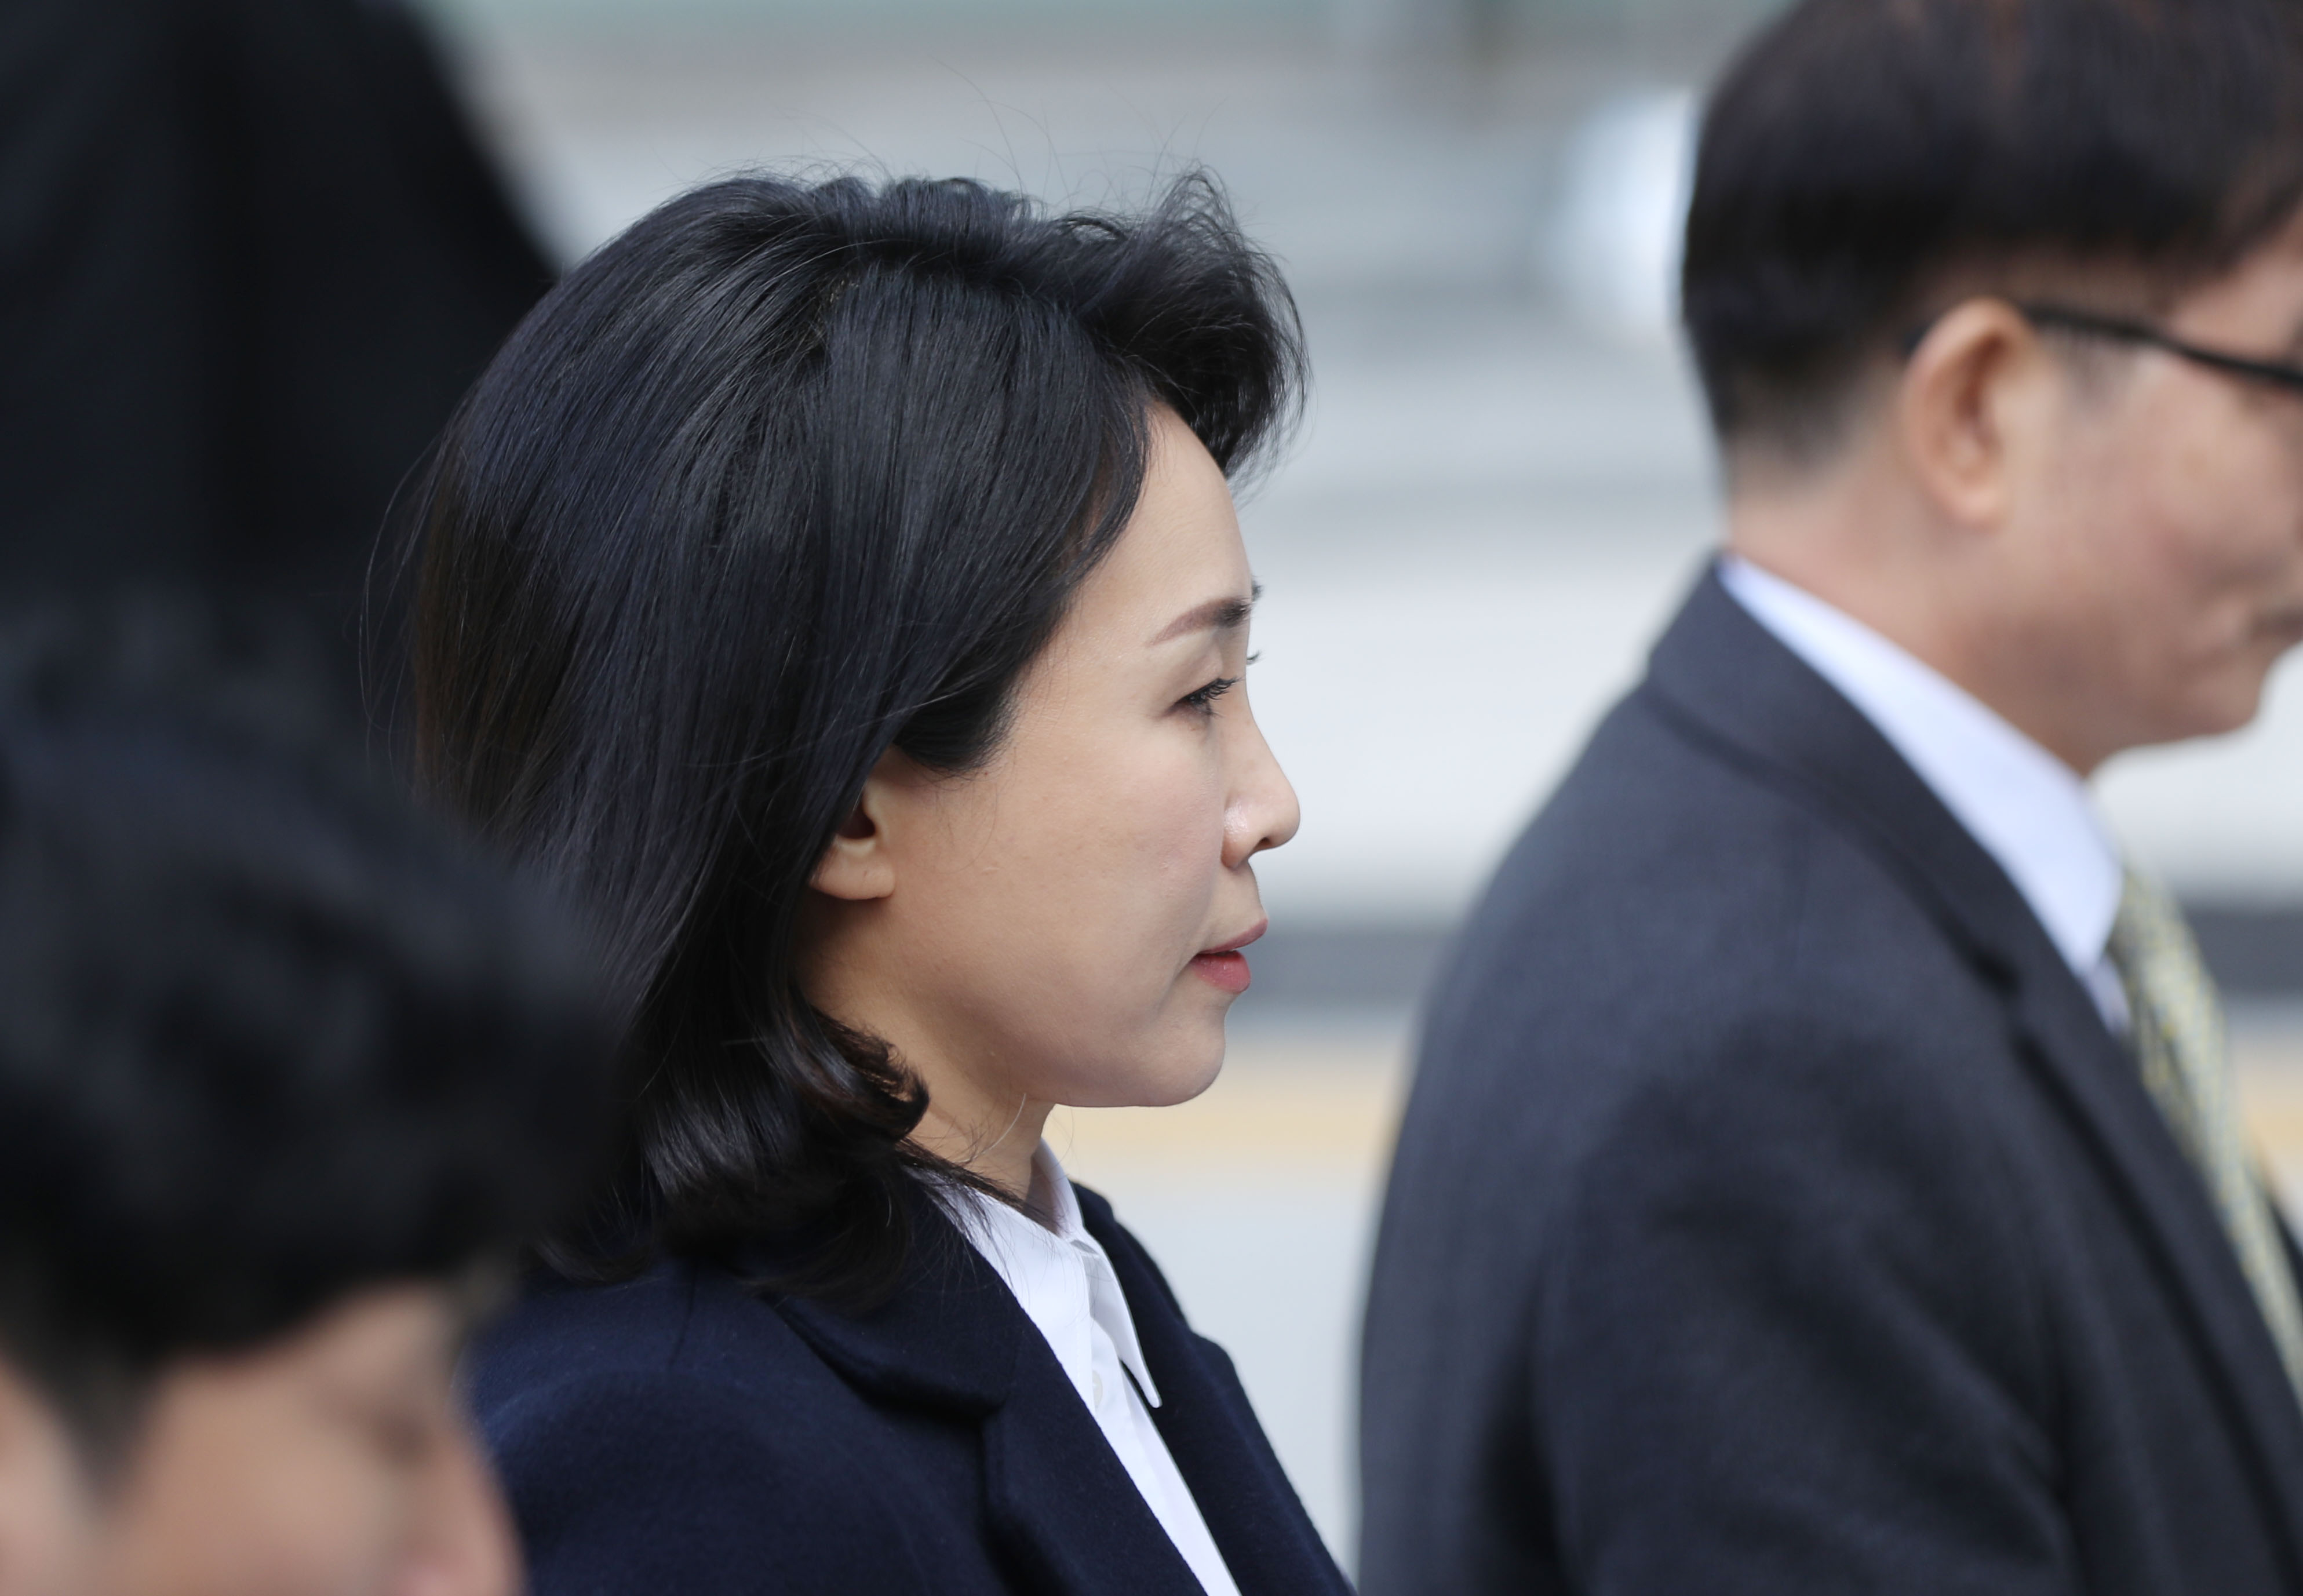 ‘공직선거법 위반’ 혐의 재판 출석하는 김혜경